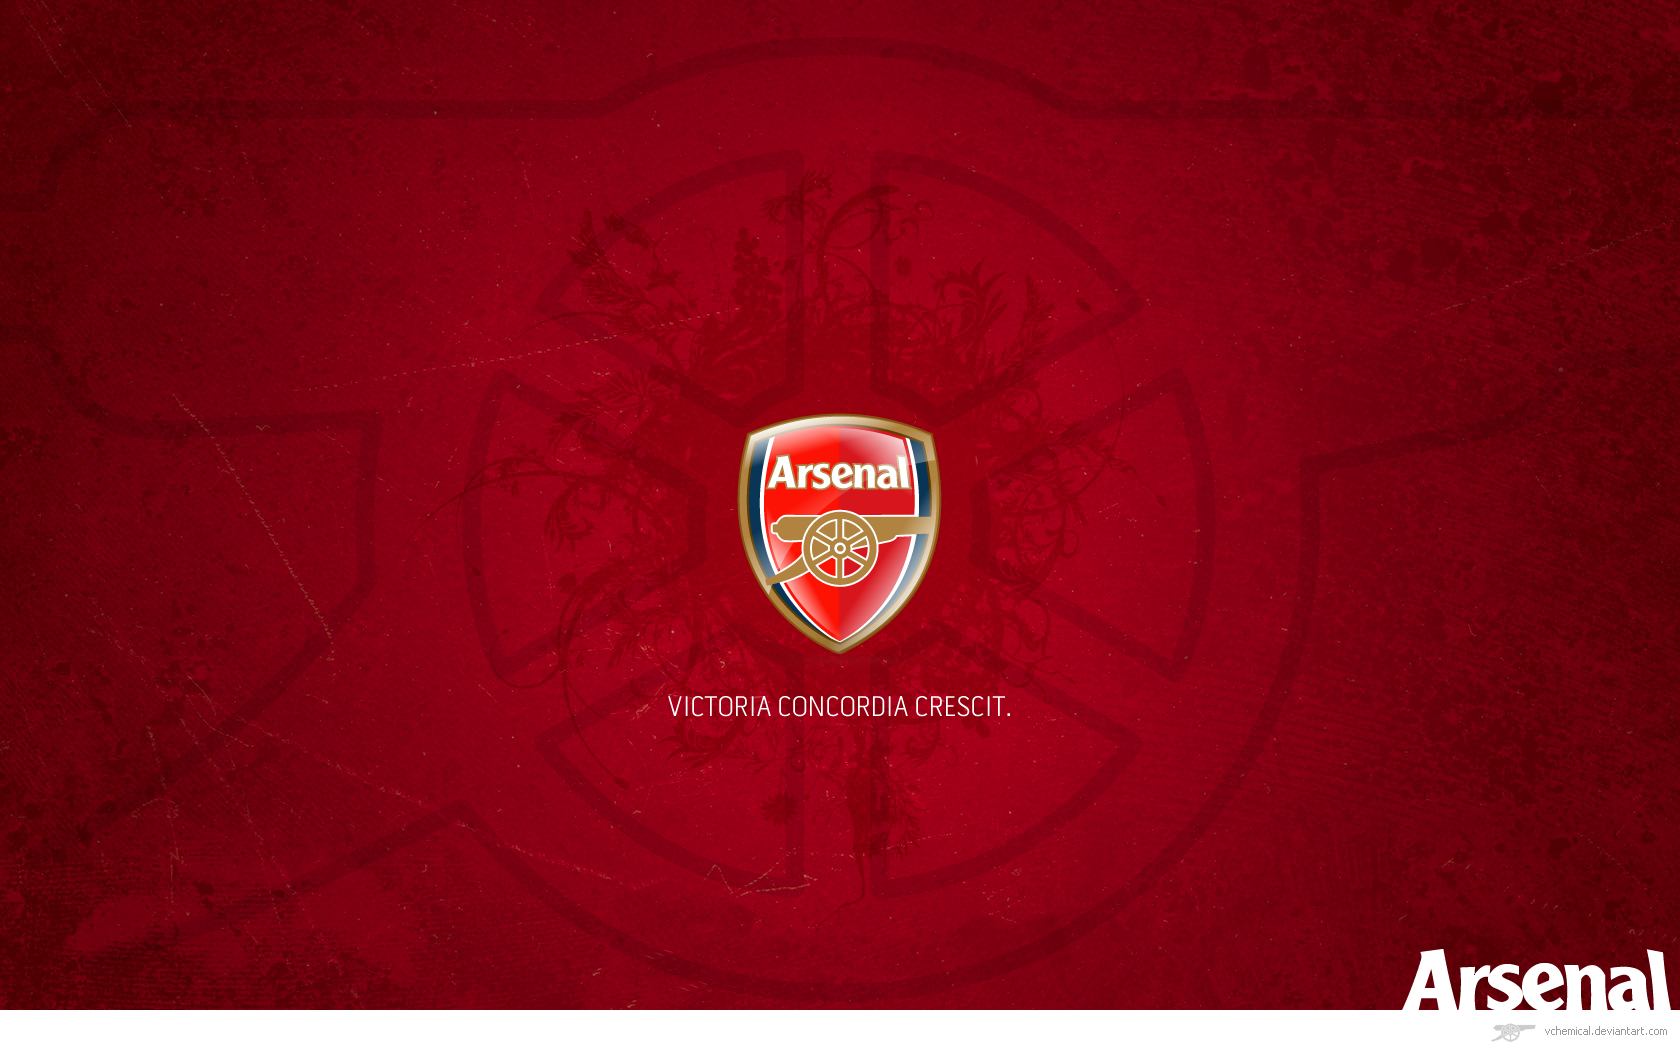 Wallpaper HDtv Widescreen Vchemical Arsenal Football Club